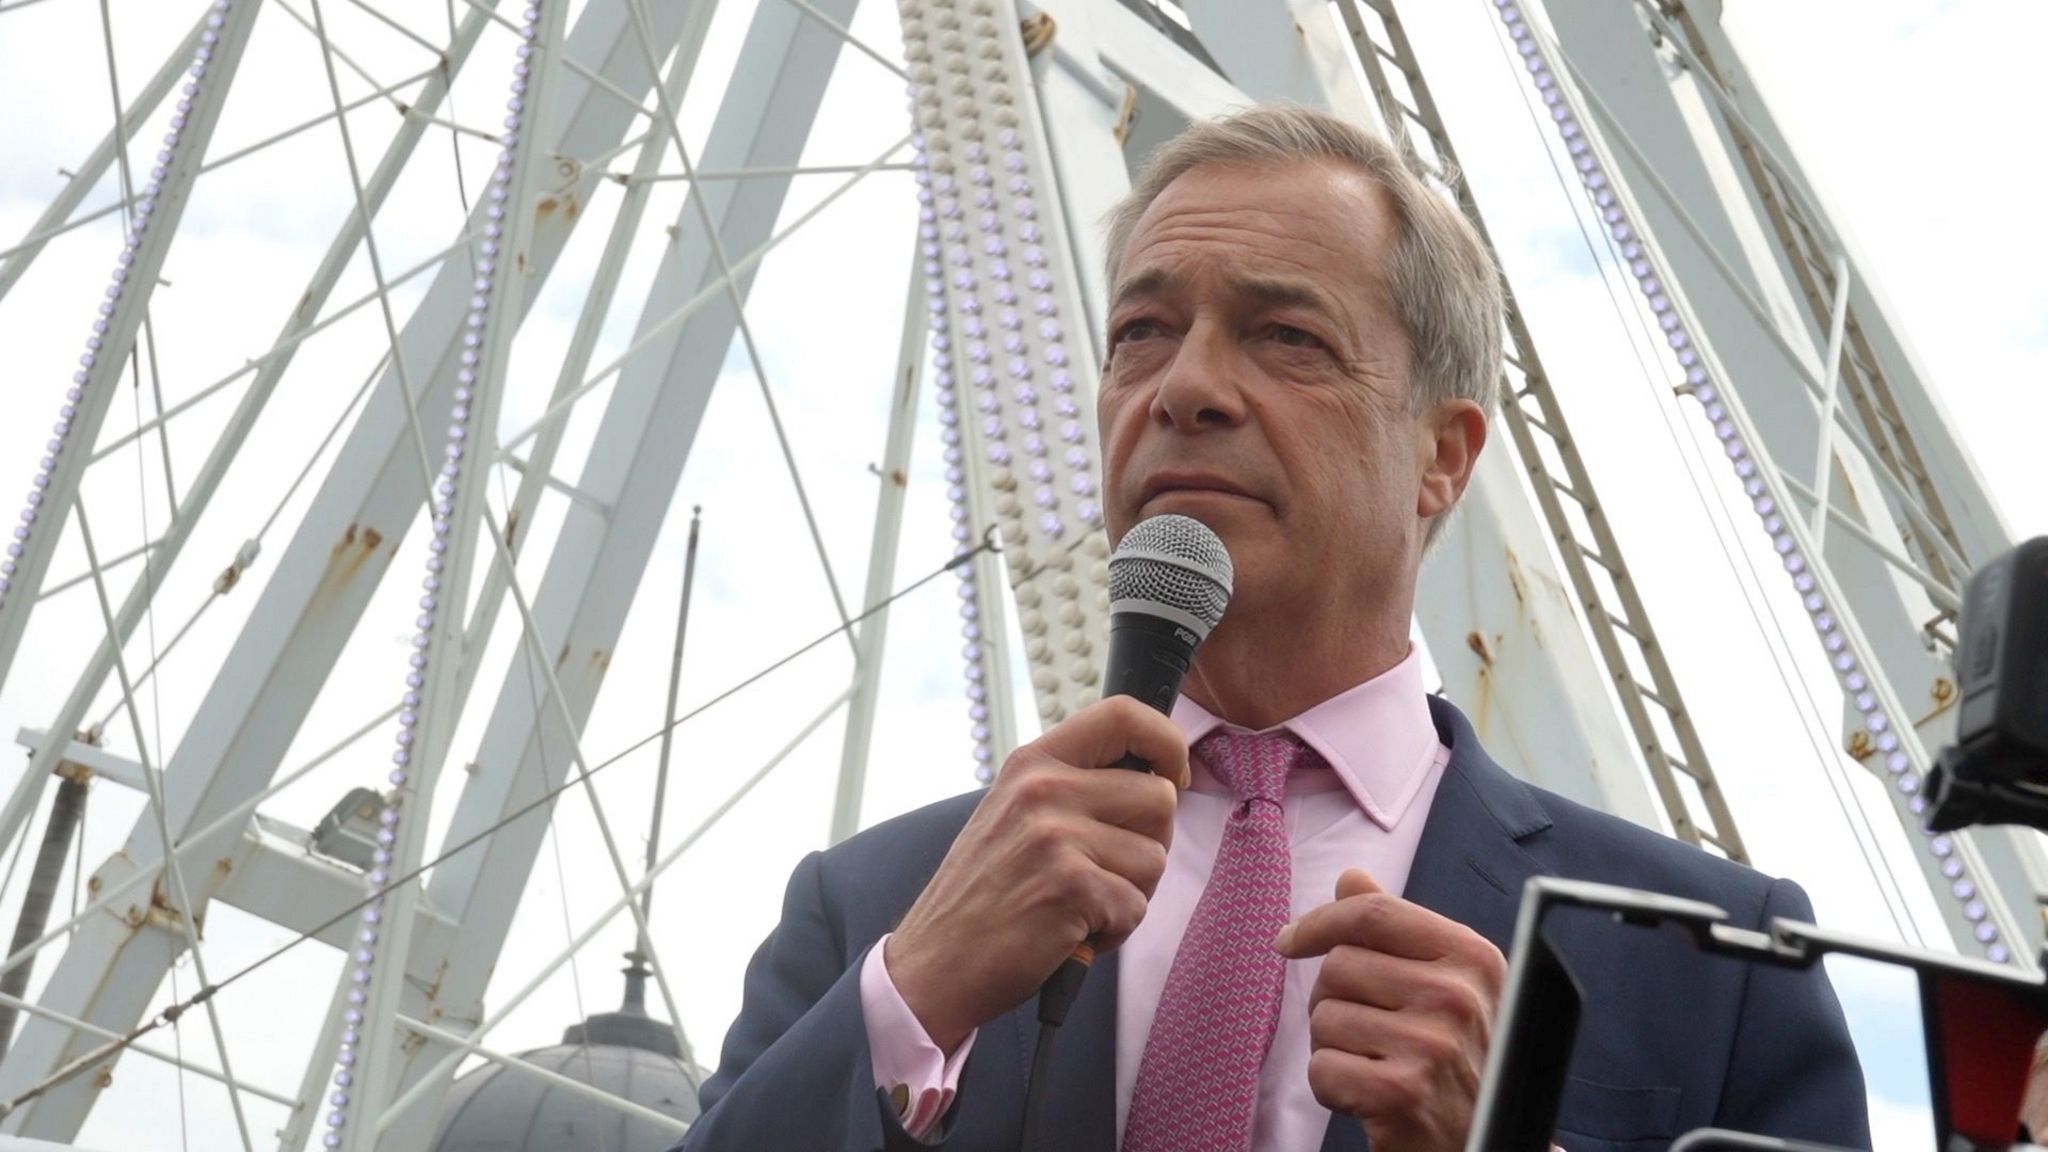 Nigel Farage addressing a rally in Clacton